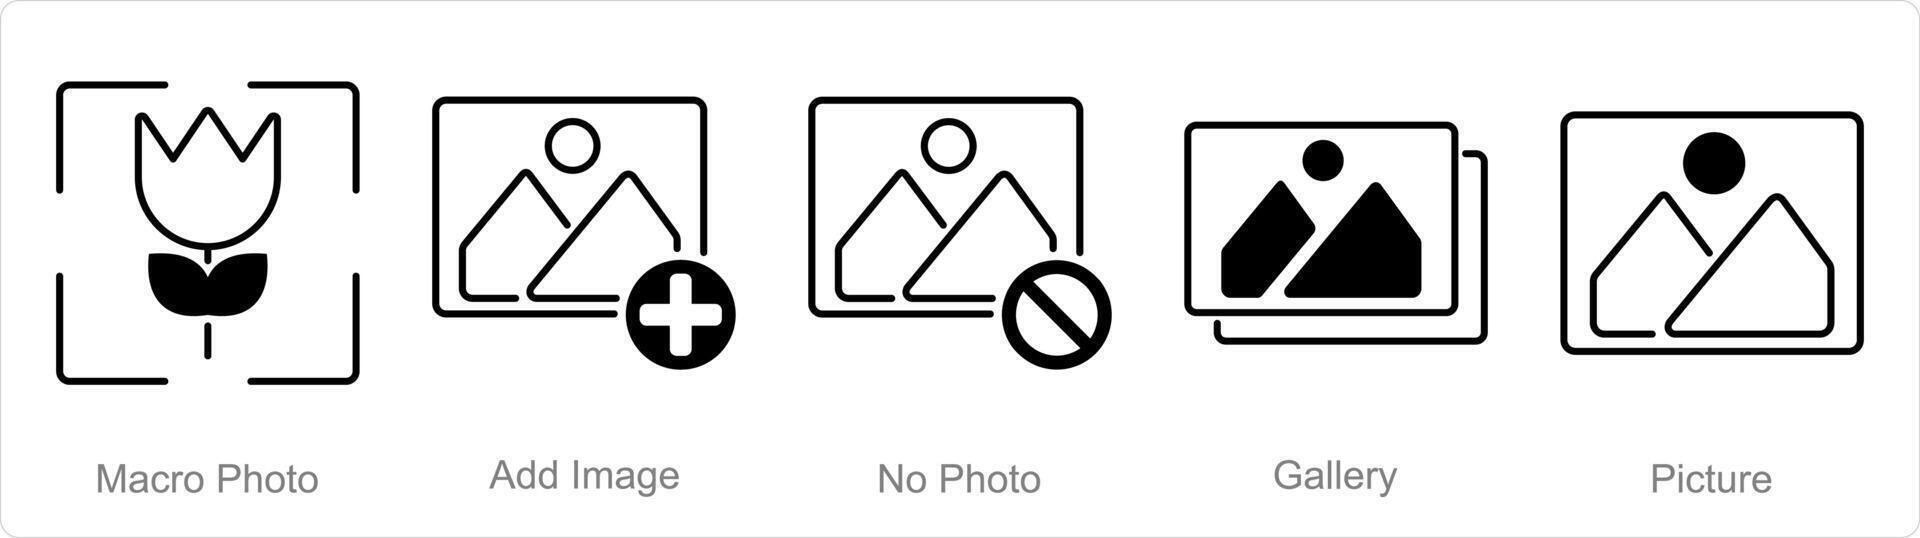 un conjunto de 5 5 fotografía íconos como macro foto, añadir imagen, No foto vector